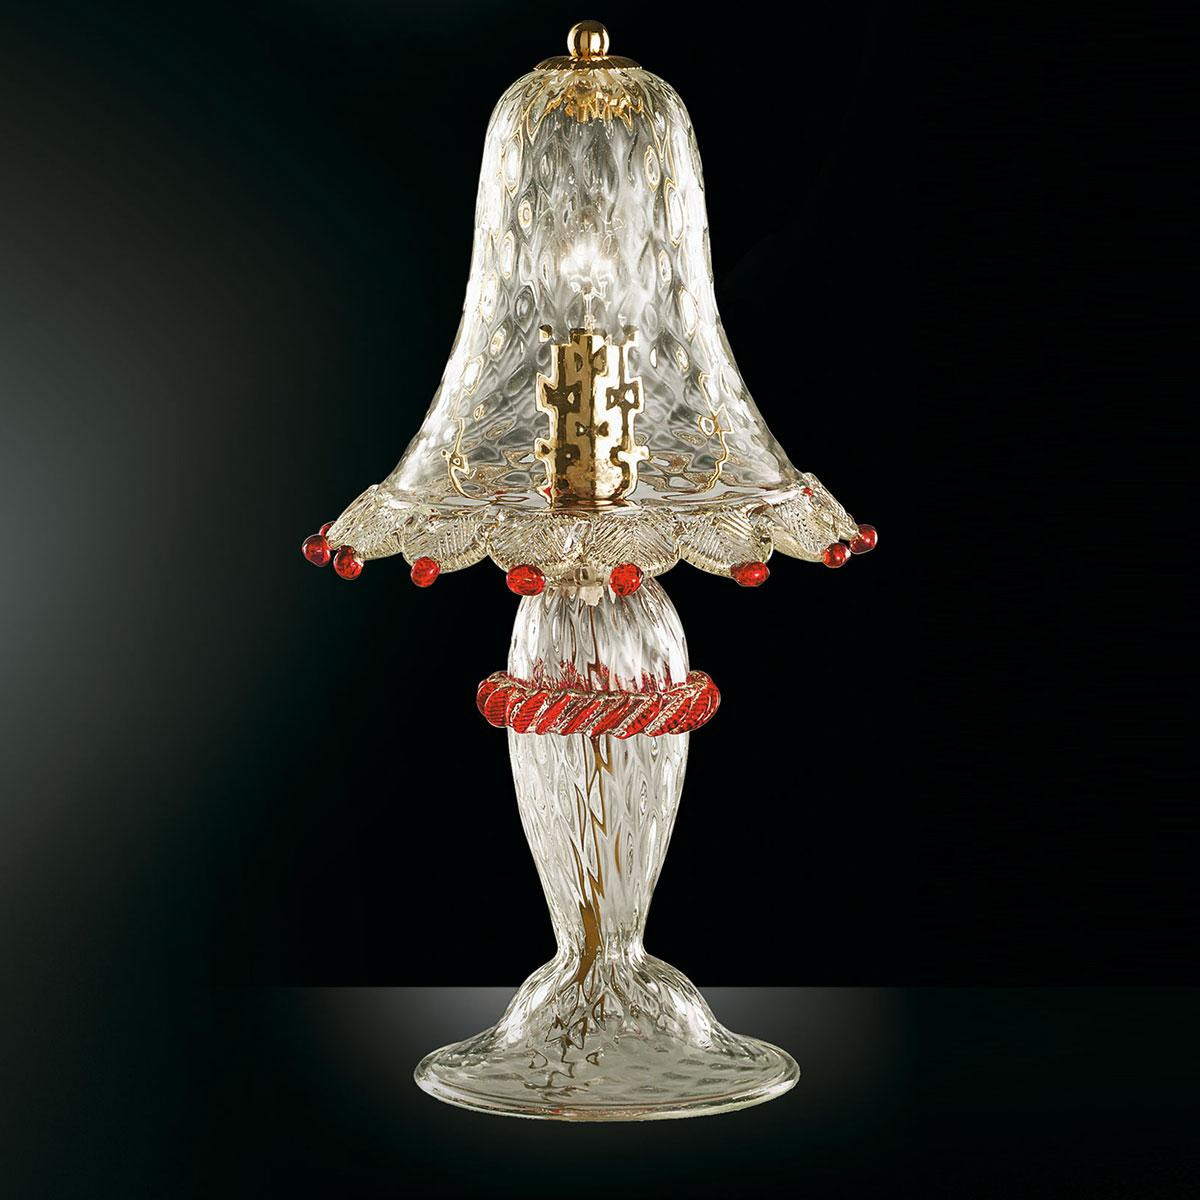 "Rosalba" lampara de mesita de noche de Murano - 1 luce - transparente, oro y rojo